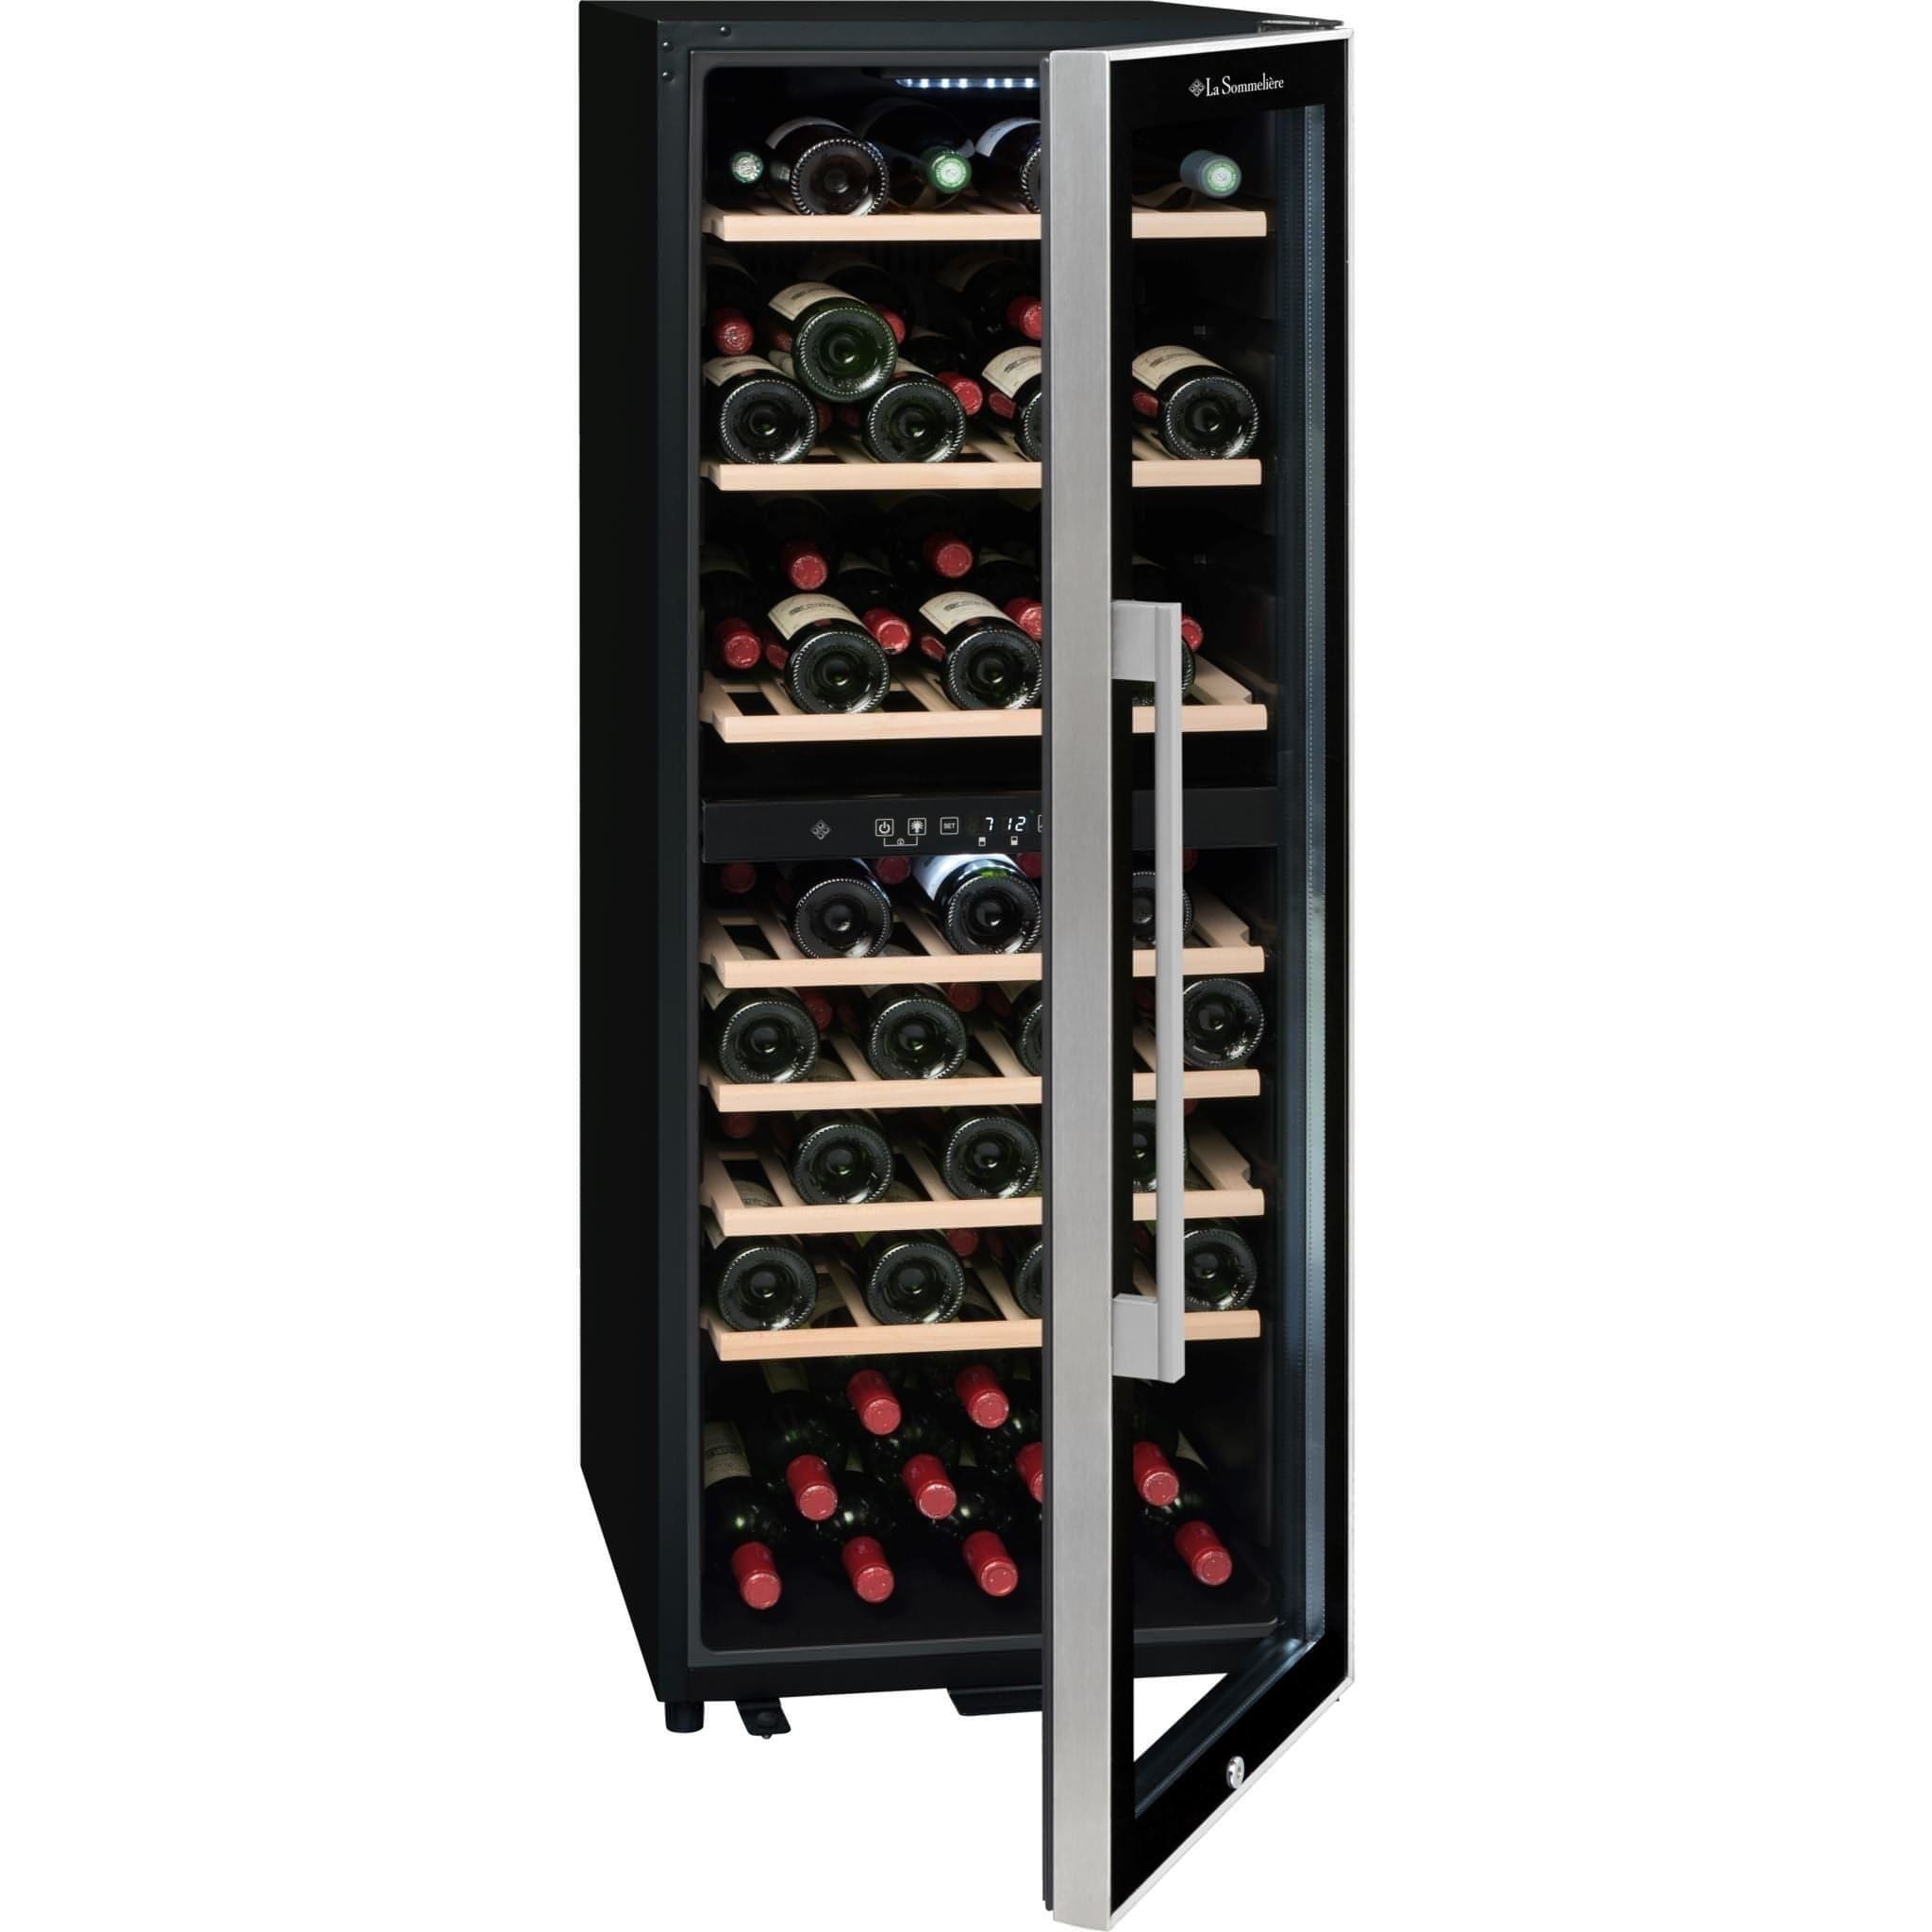 La Sommeliere - Dual Zone - 75 Bottle - Freestanding Wine Fridge - ECS80.2Z